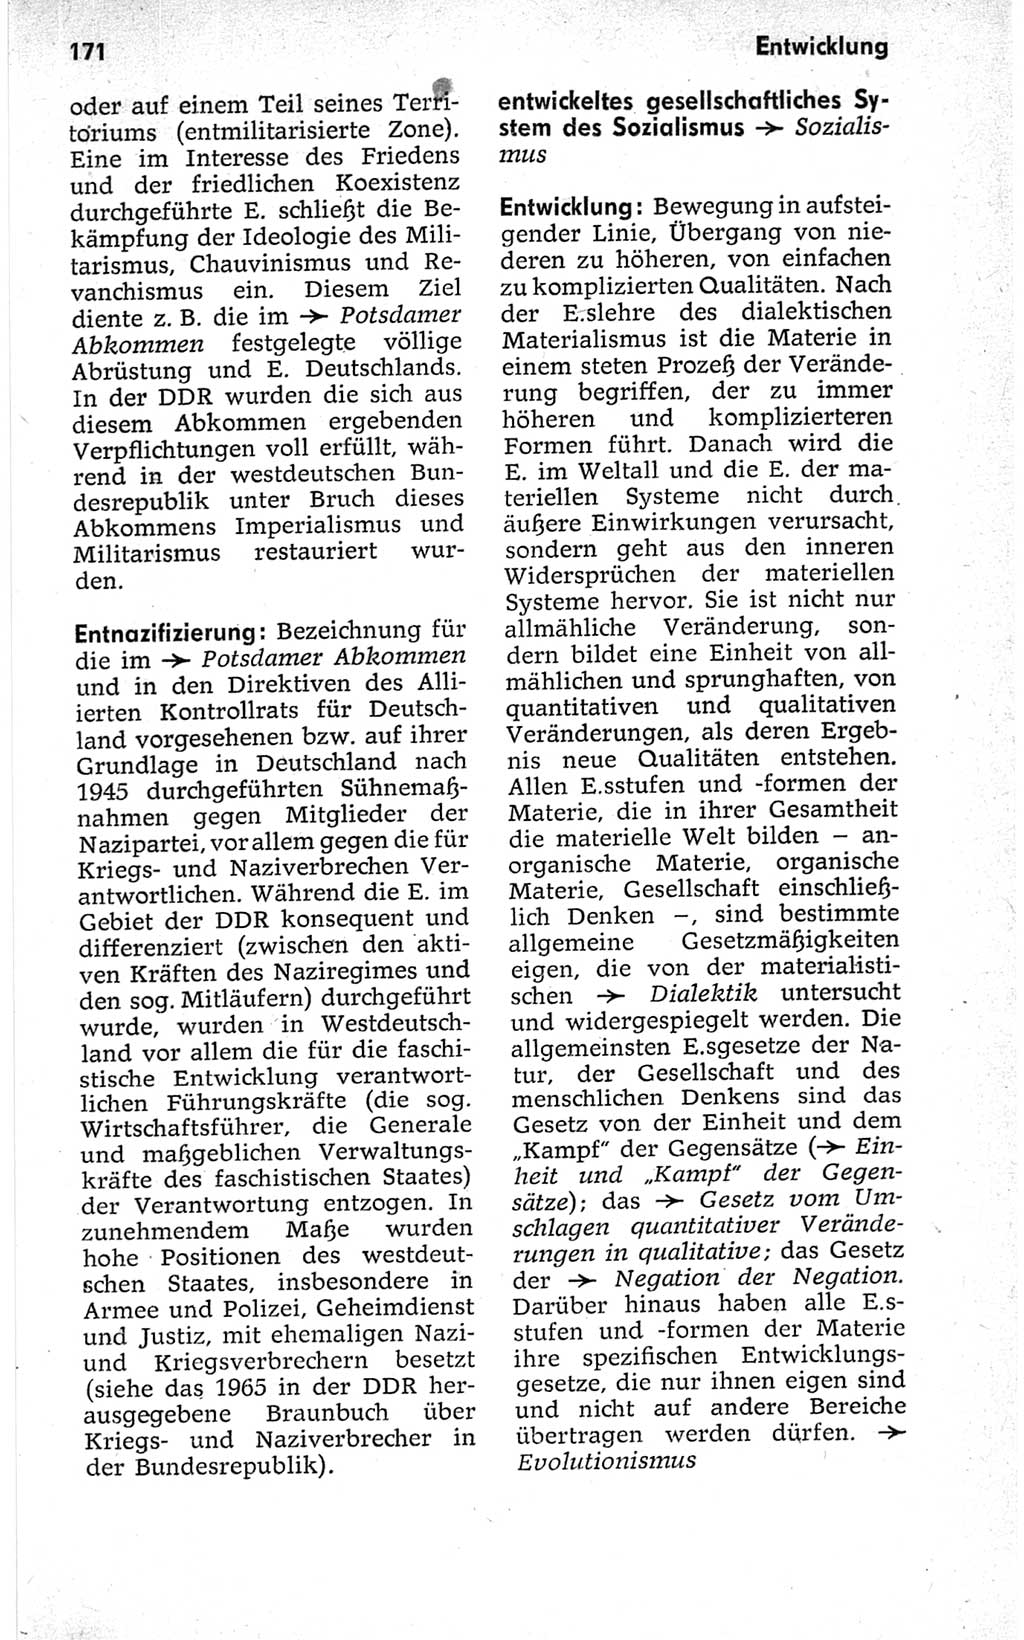 Kleines politisches Wörterbuch [Deutsche Demokratische Republik (DDR)] 1967, Seite 171 (Kl. pol. Wb. DDR 1967, S. 171)